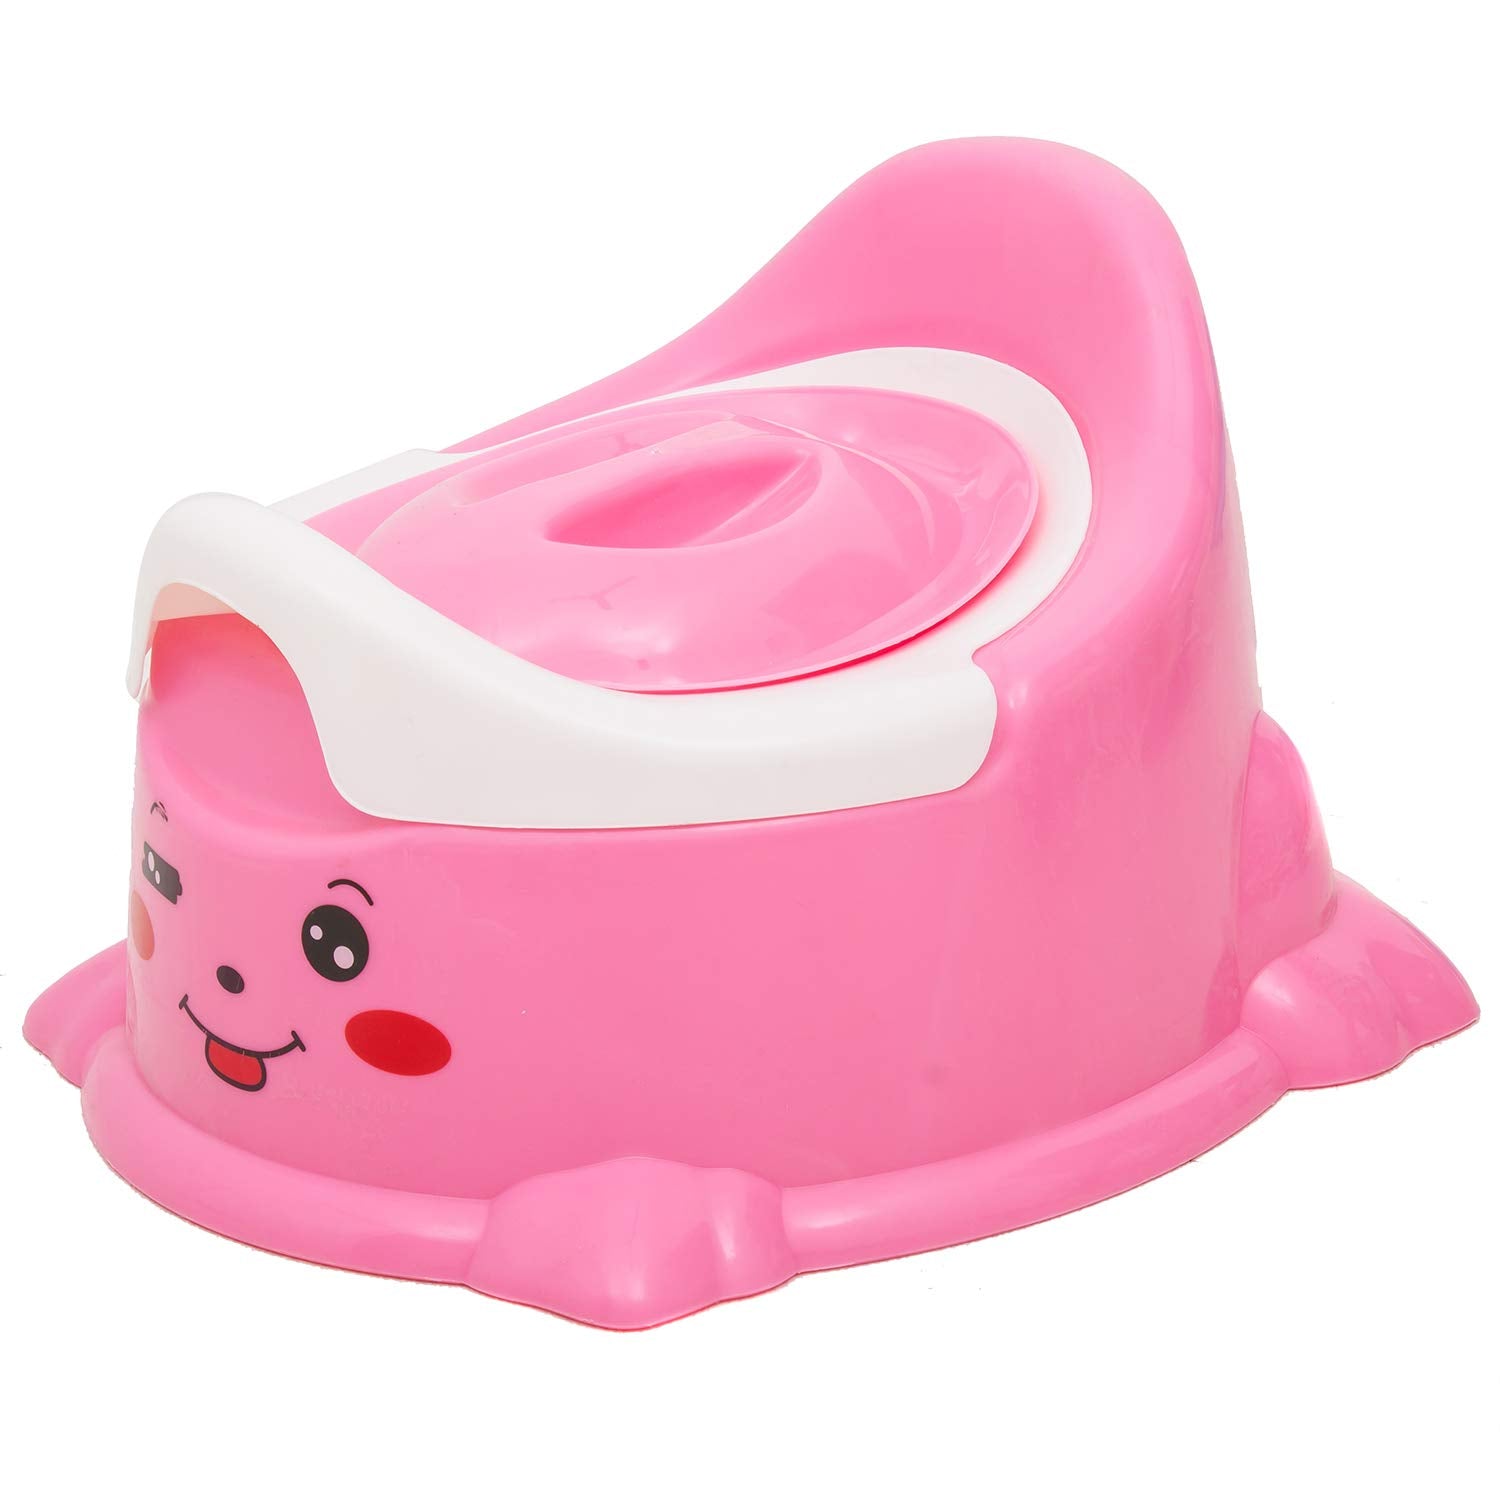 Minikin Quicker Baby Potty Training Seat I Detachable waste Tray I BPA Free I 0-5 Years